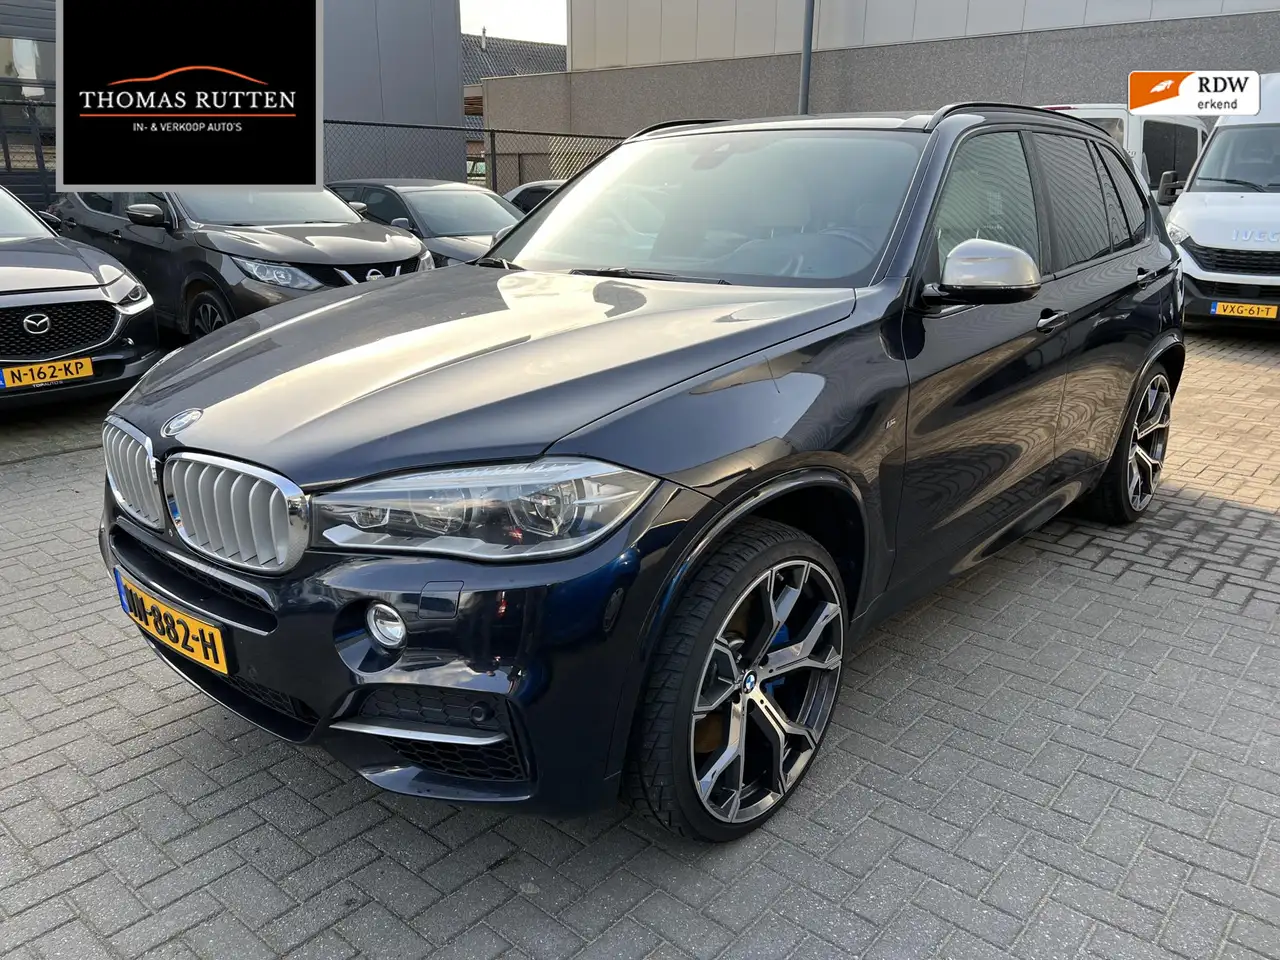 BMW X5 SUV/4x4/Pick-up in Blauw tweedehands in BUDEL voor € 18.950,-